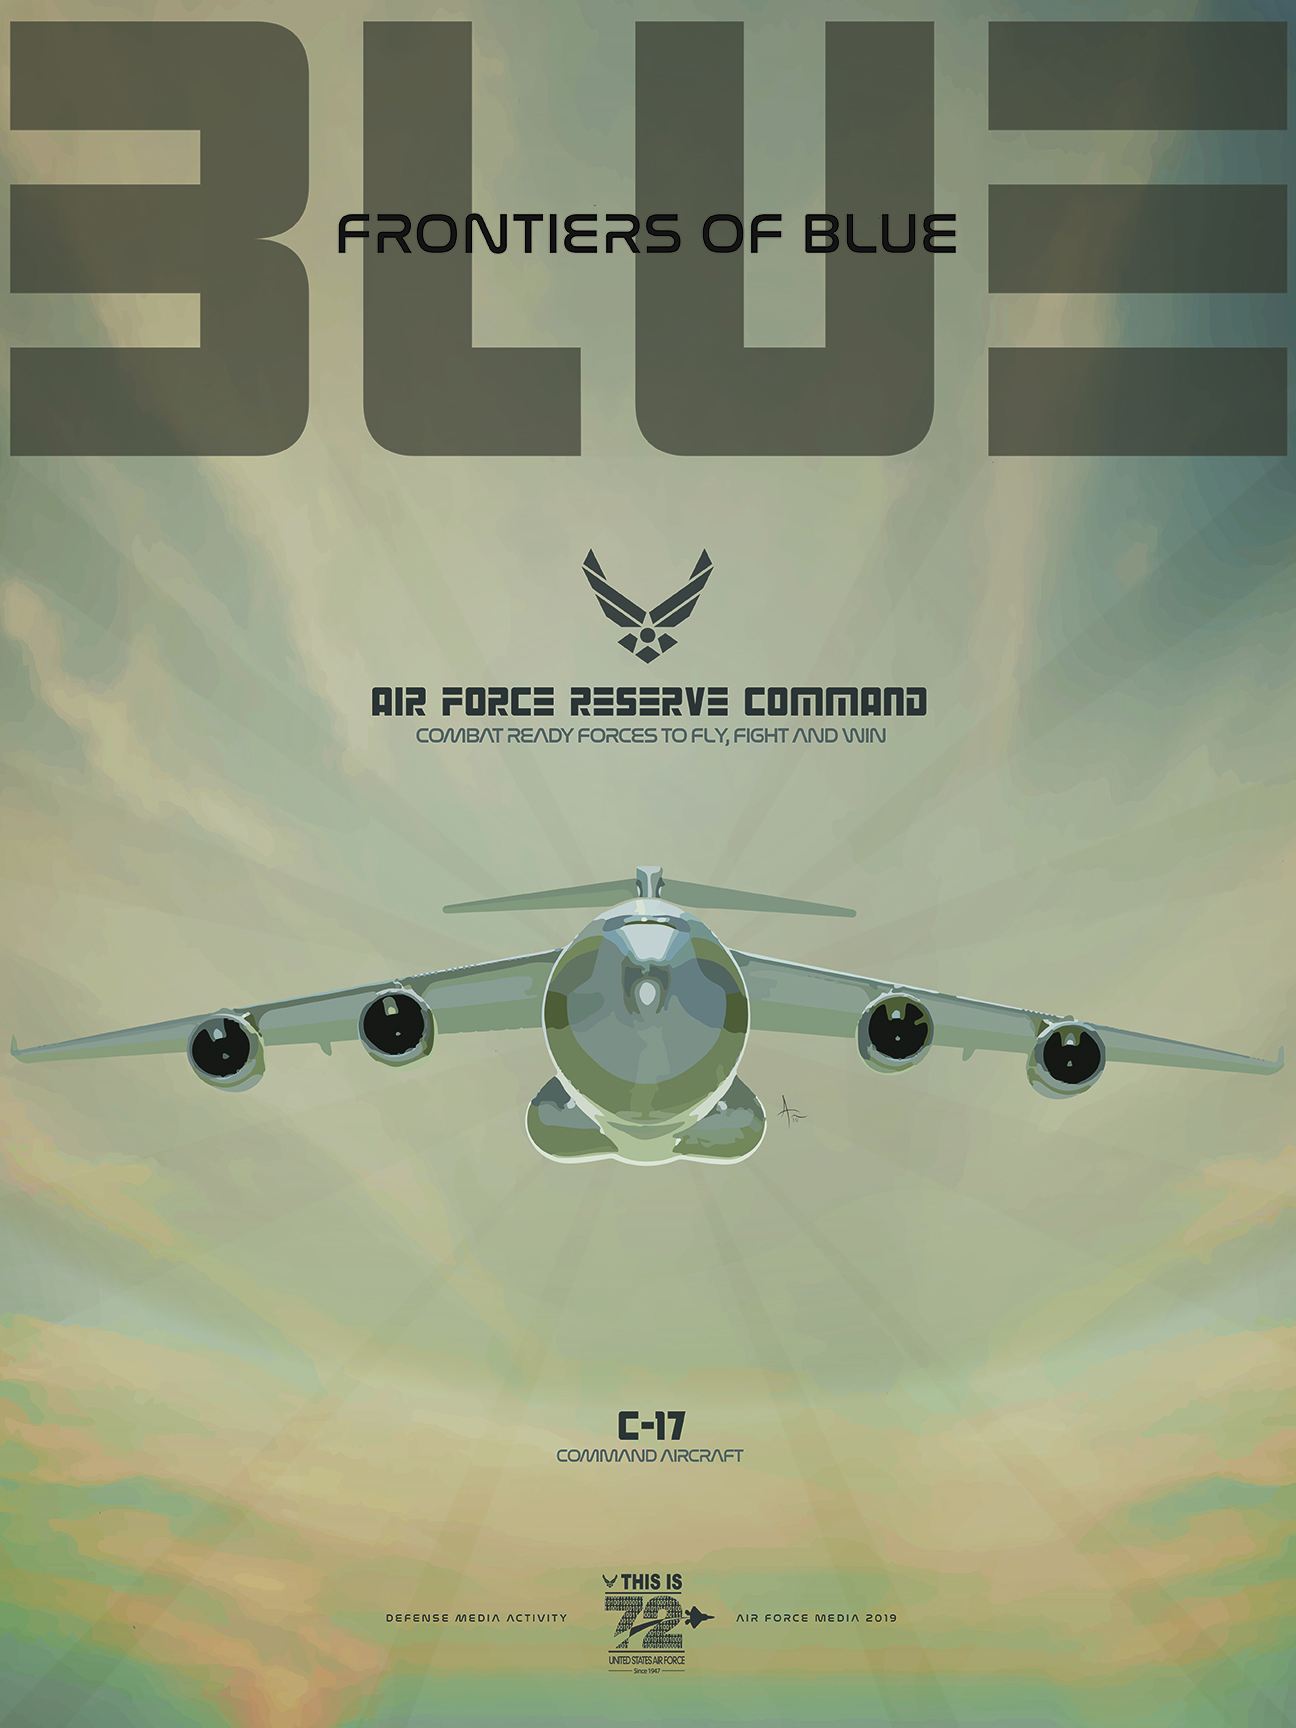 AFRC C-17